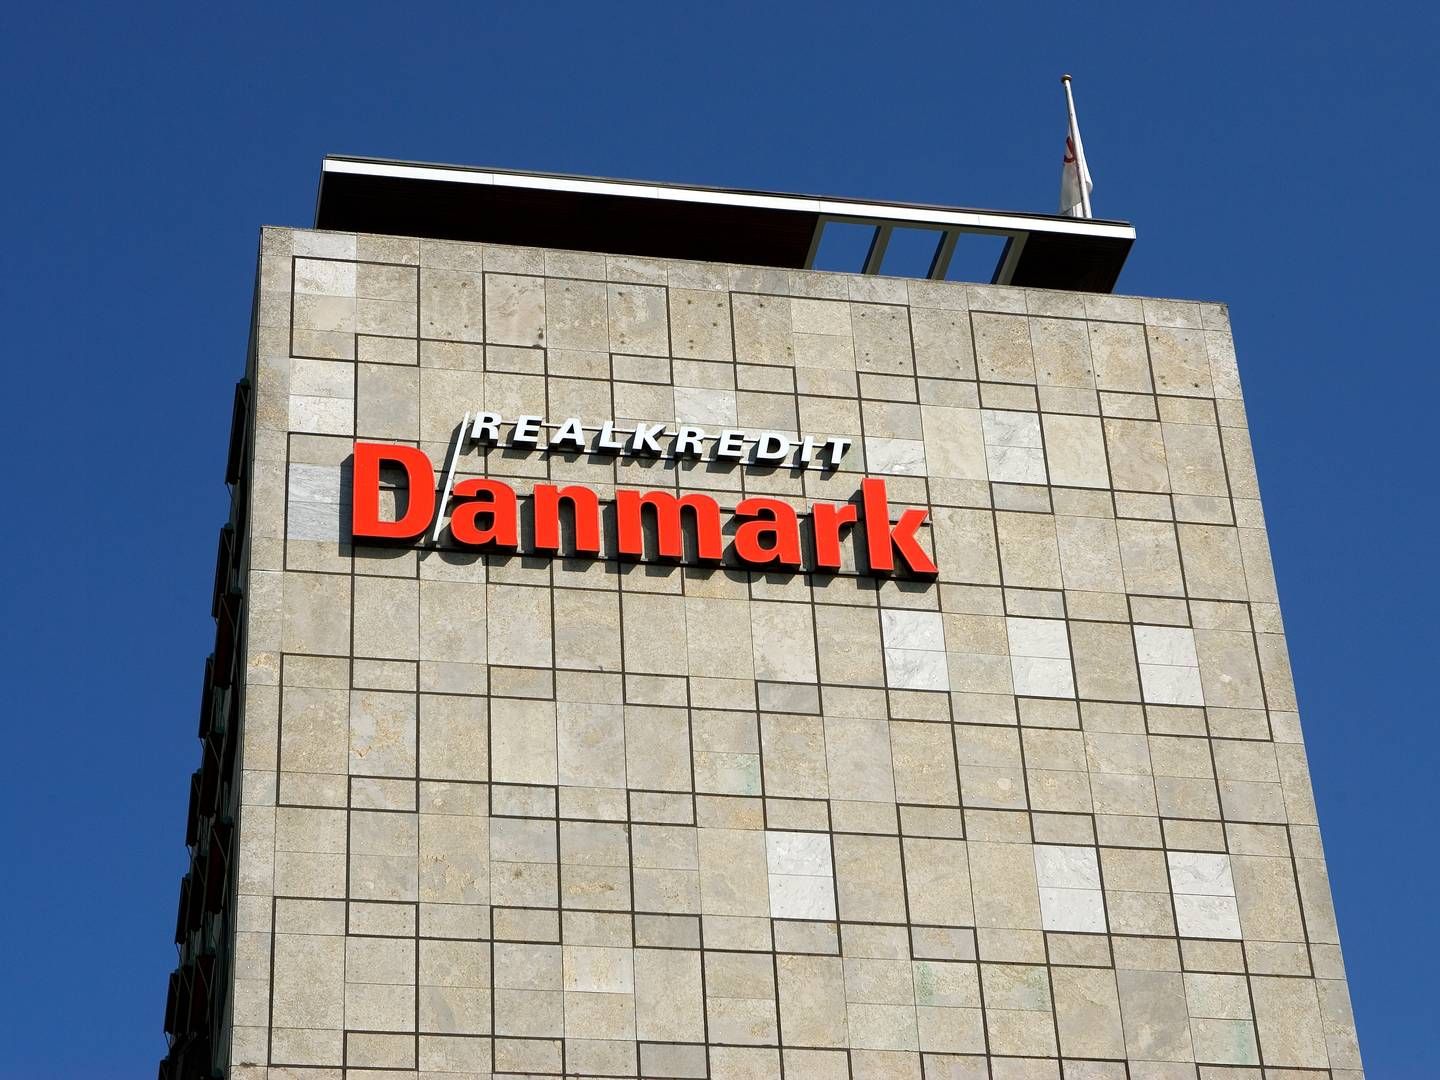 Realkredit Danmark overskud vokser efter et højere renteniveau. | Foto: Thomas Borberg